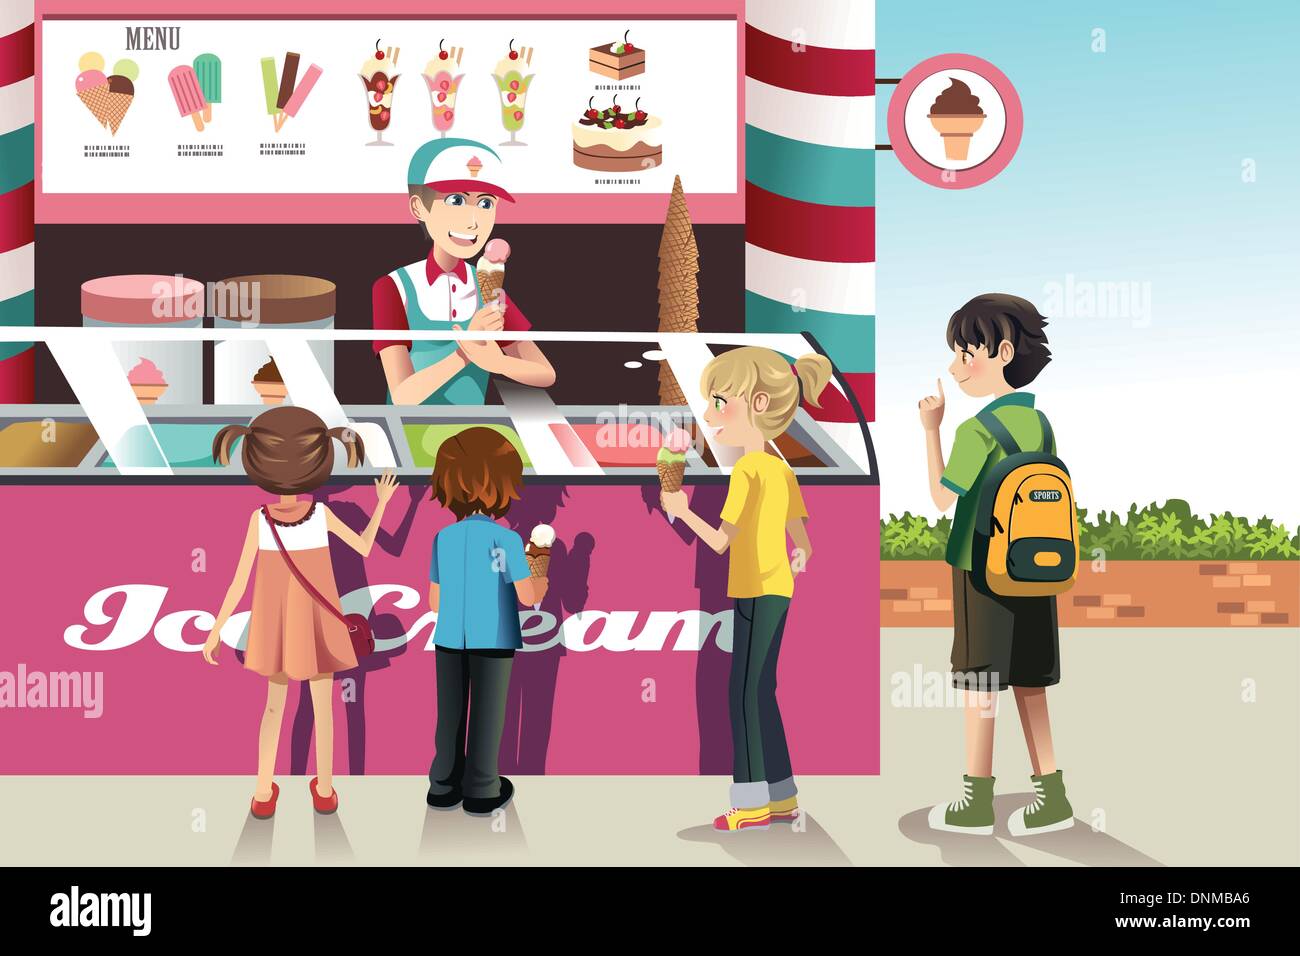 Eine Vektor-Illustration der Kinder kaufen Eis an einem Eis-stand  Stock-Vektorgrafik - Alamy